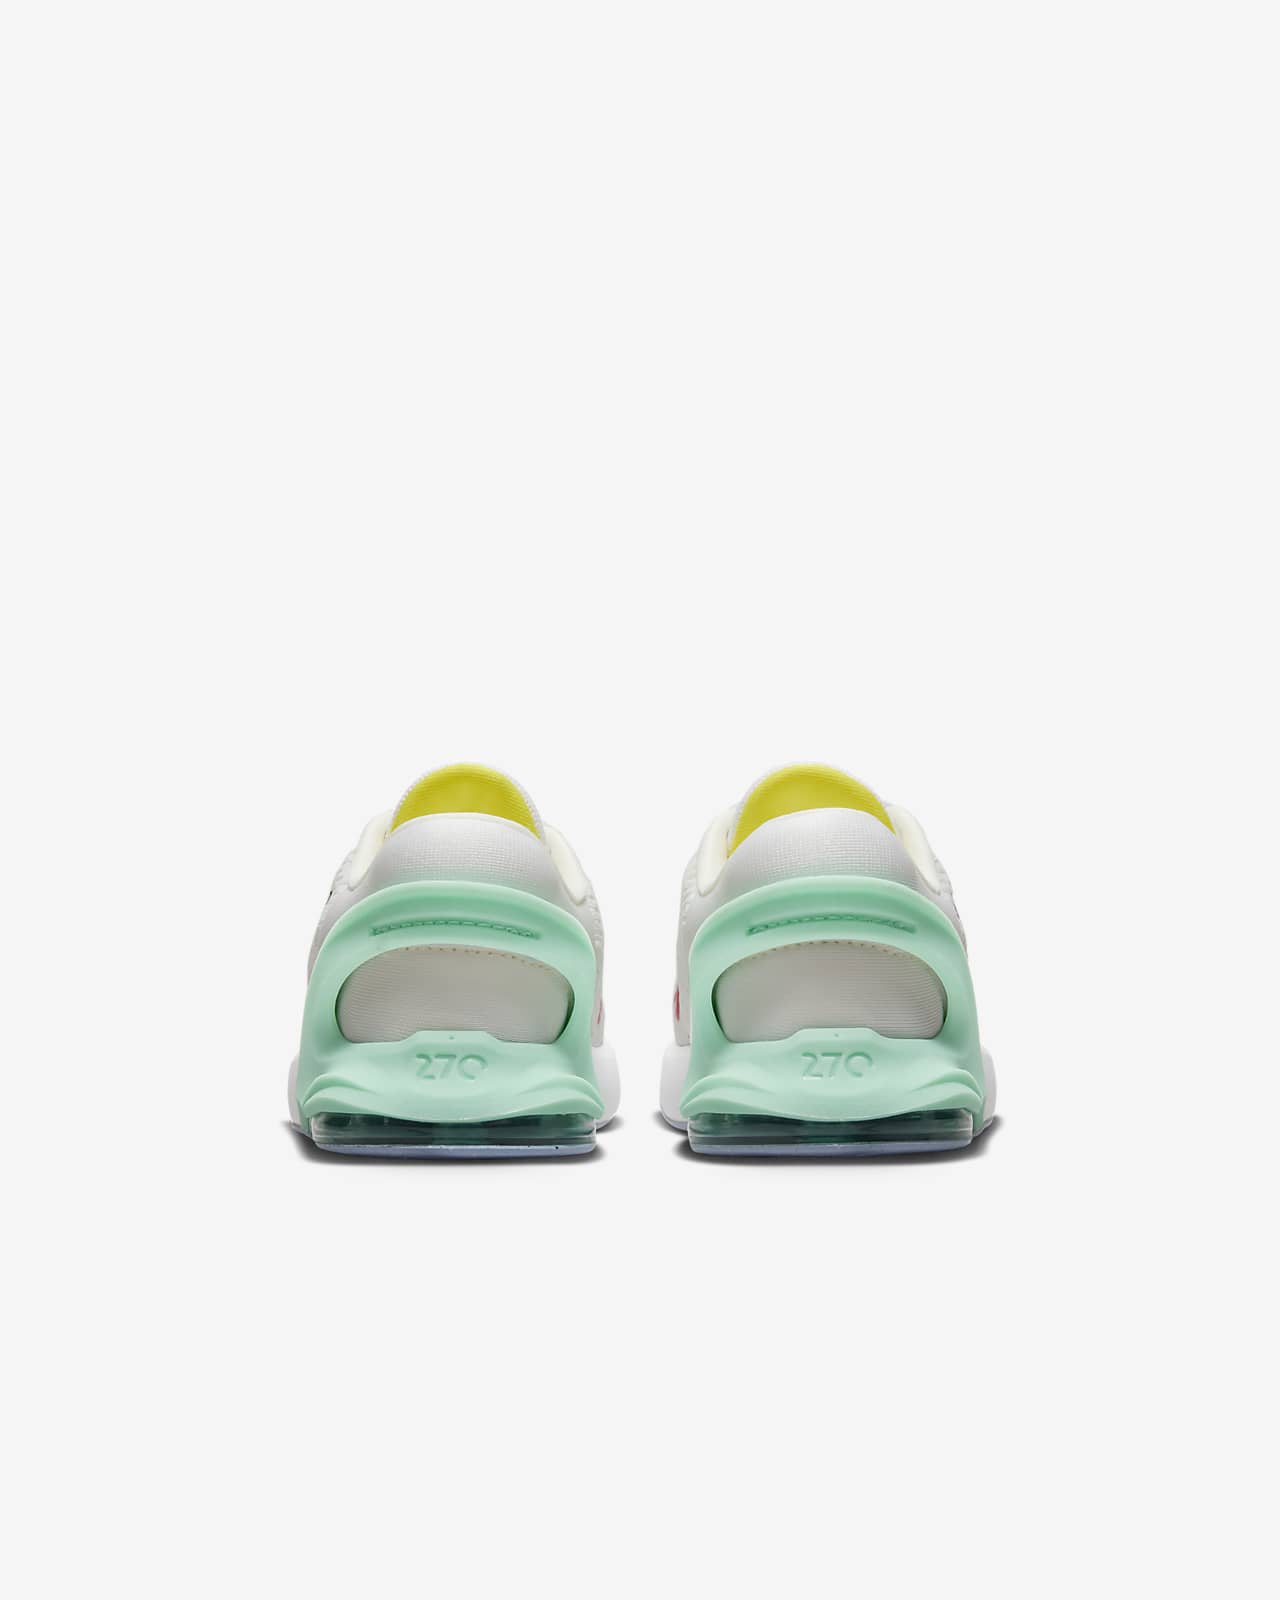 fácil de poner y quitar Nike Air Max 270 GO bebé e infantil.